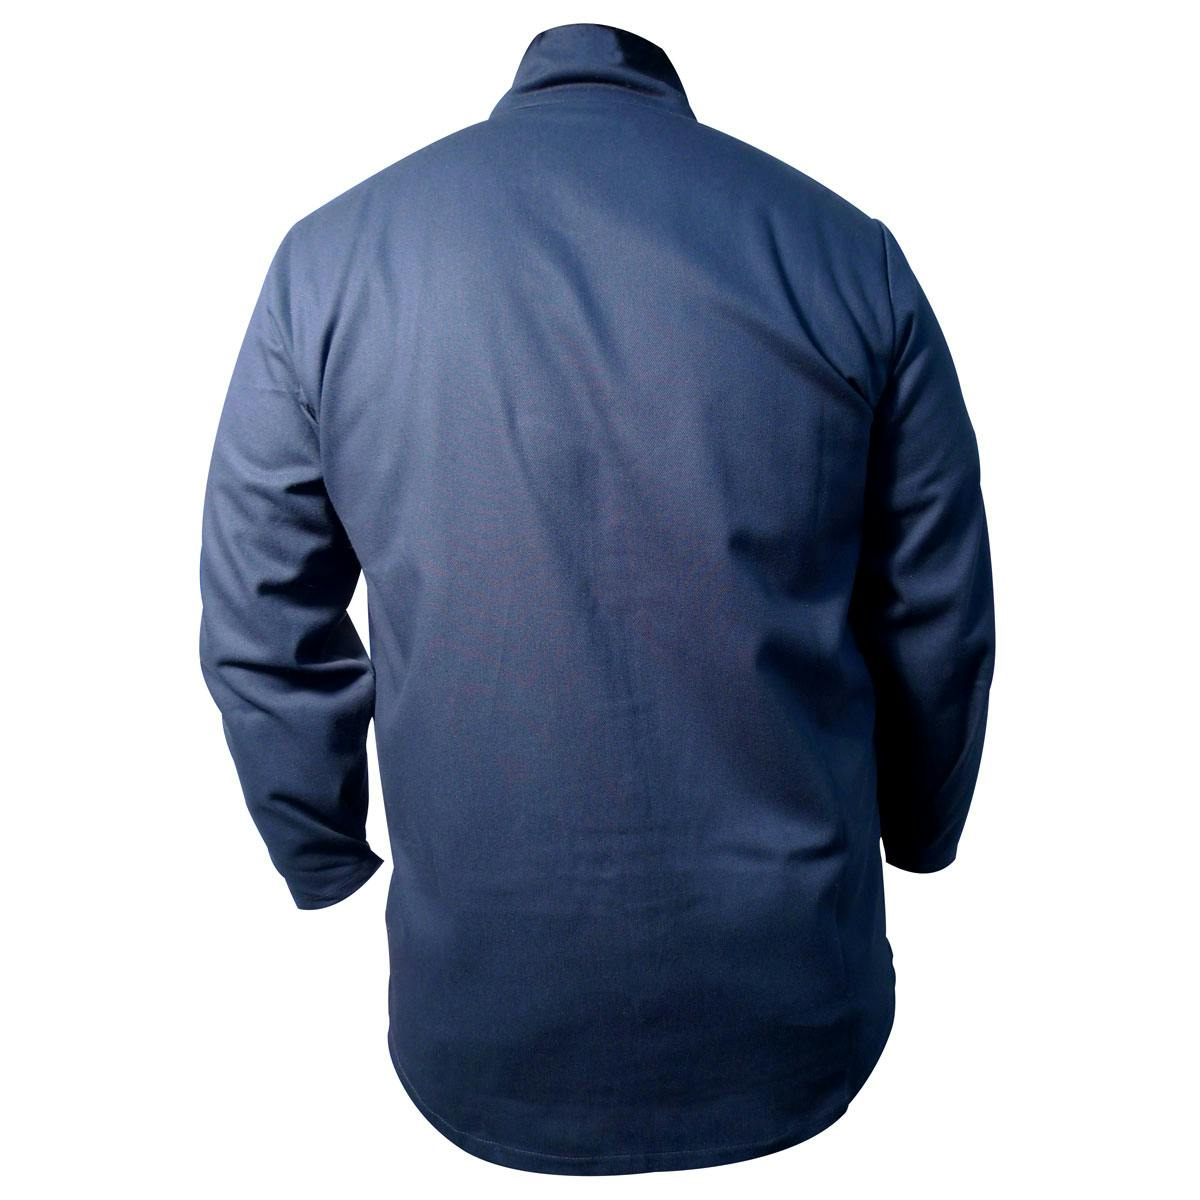 9oz FR Cotton Coat / Jacket, Navy (3000)